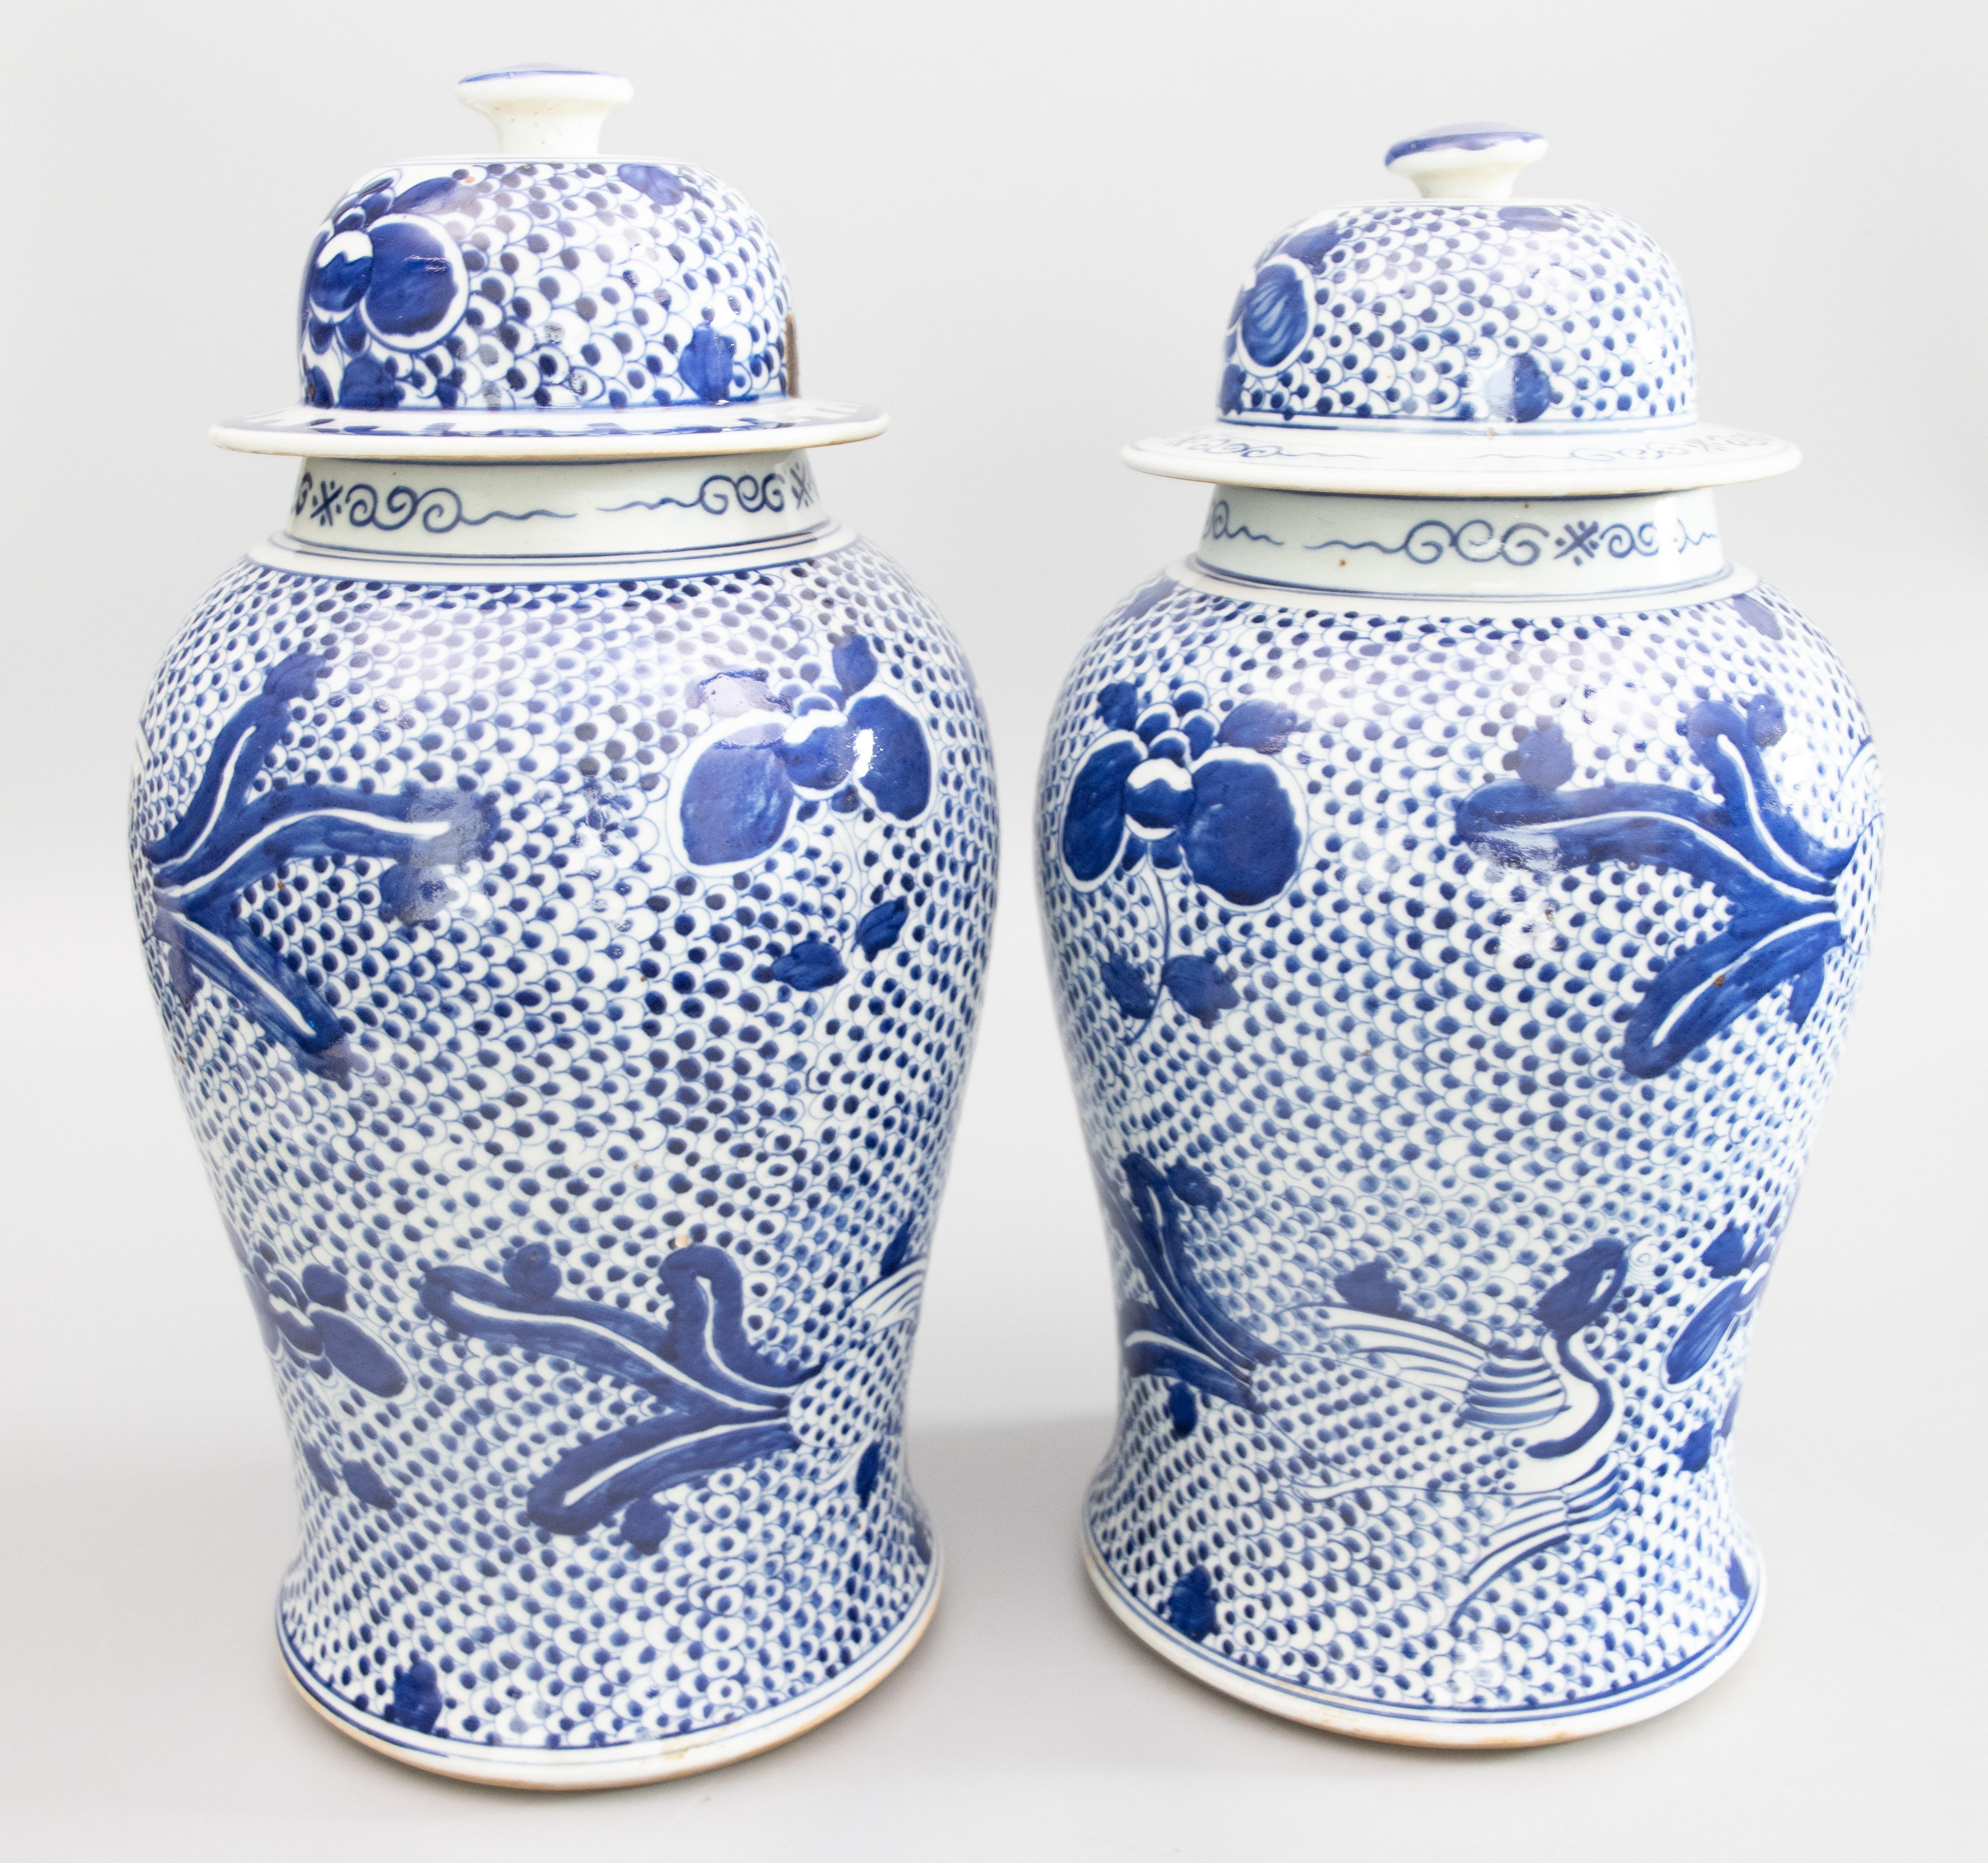 Jolie paire de jarres à temple ou à gingembre de style Kangxi, fabriquées à la main. Ces magnifiques jarres de grande taille sont ornées d'oiseaux phénix et de fleurs de pivoine peints à la main sur un motif Balasta bleu cobalt et blanc éclatant.